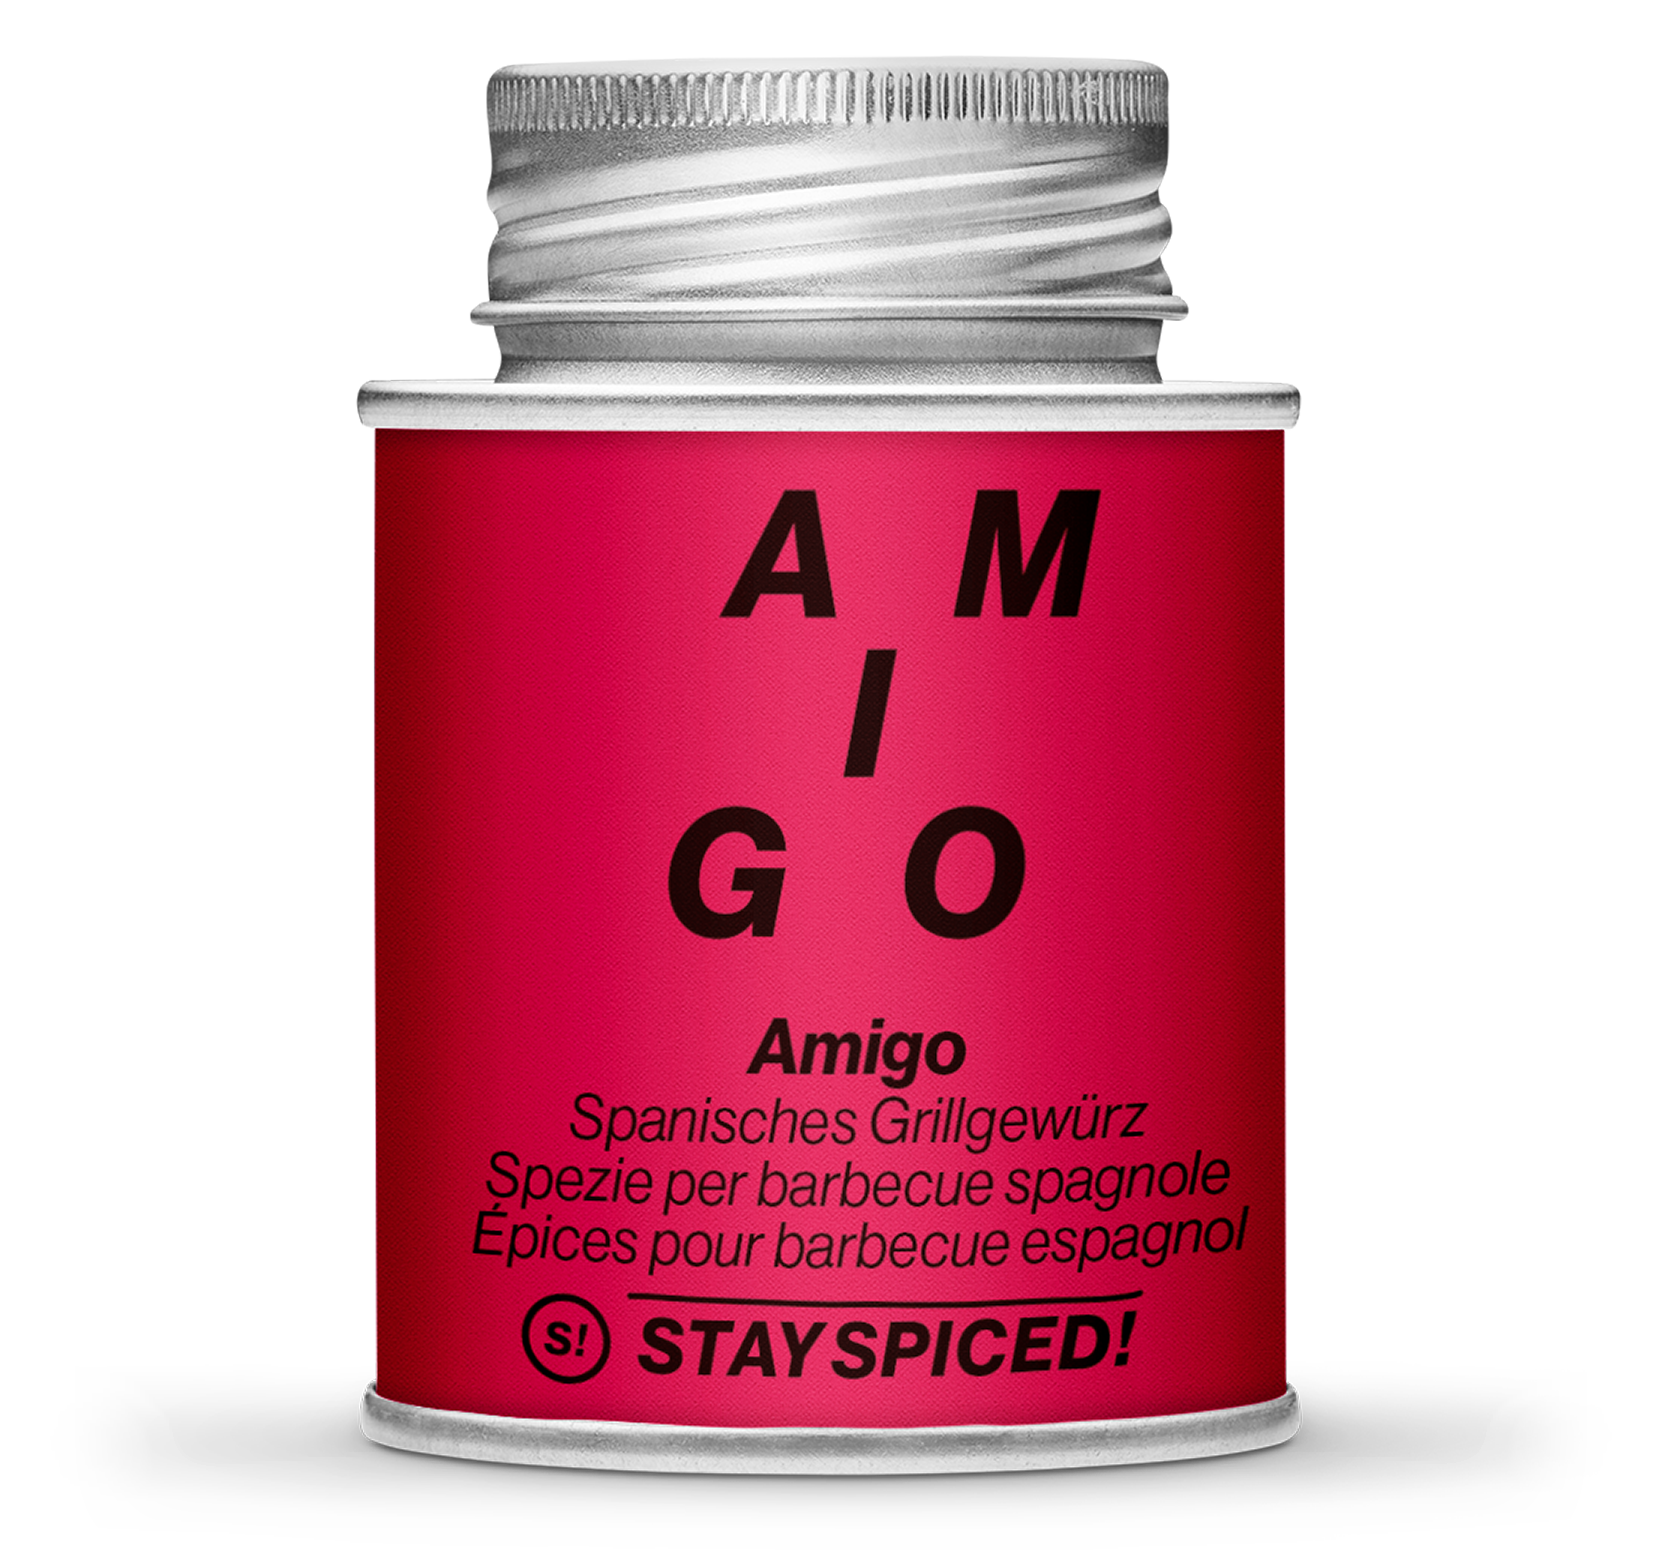 Amigo, 170ml Schraubdose